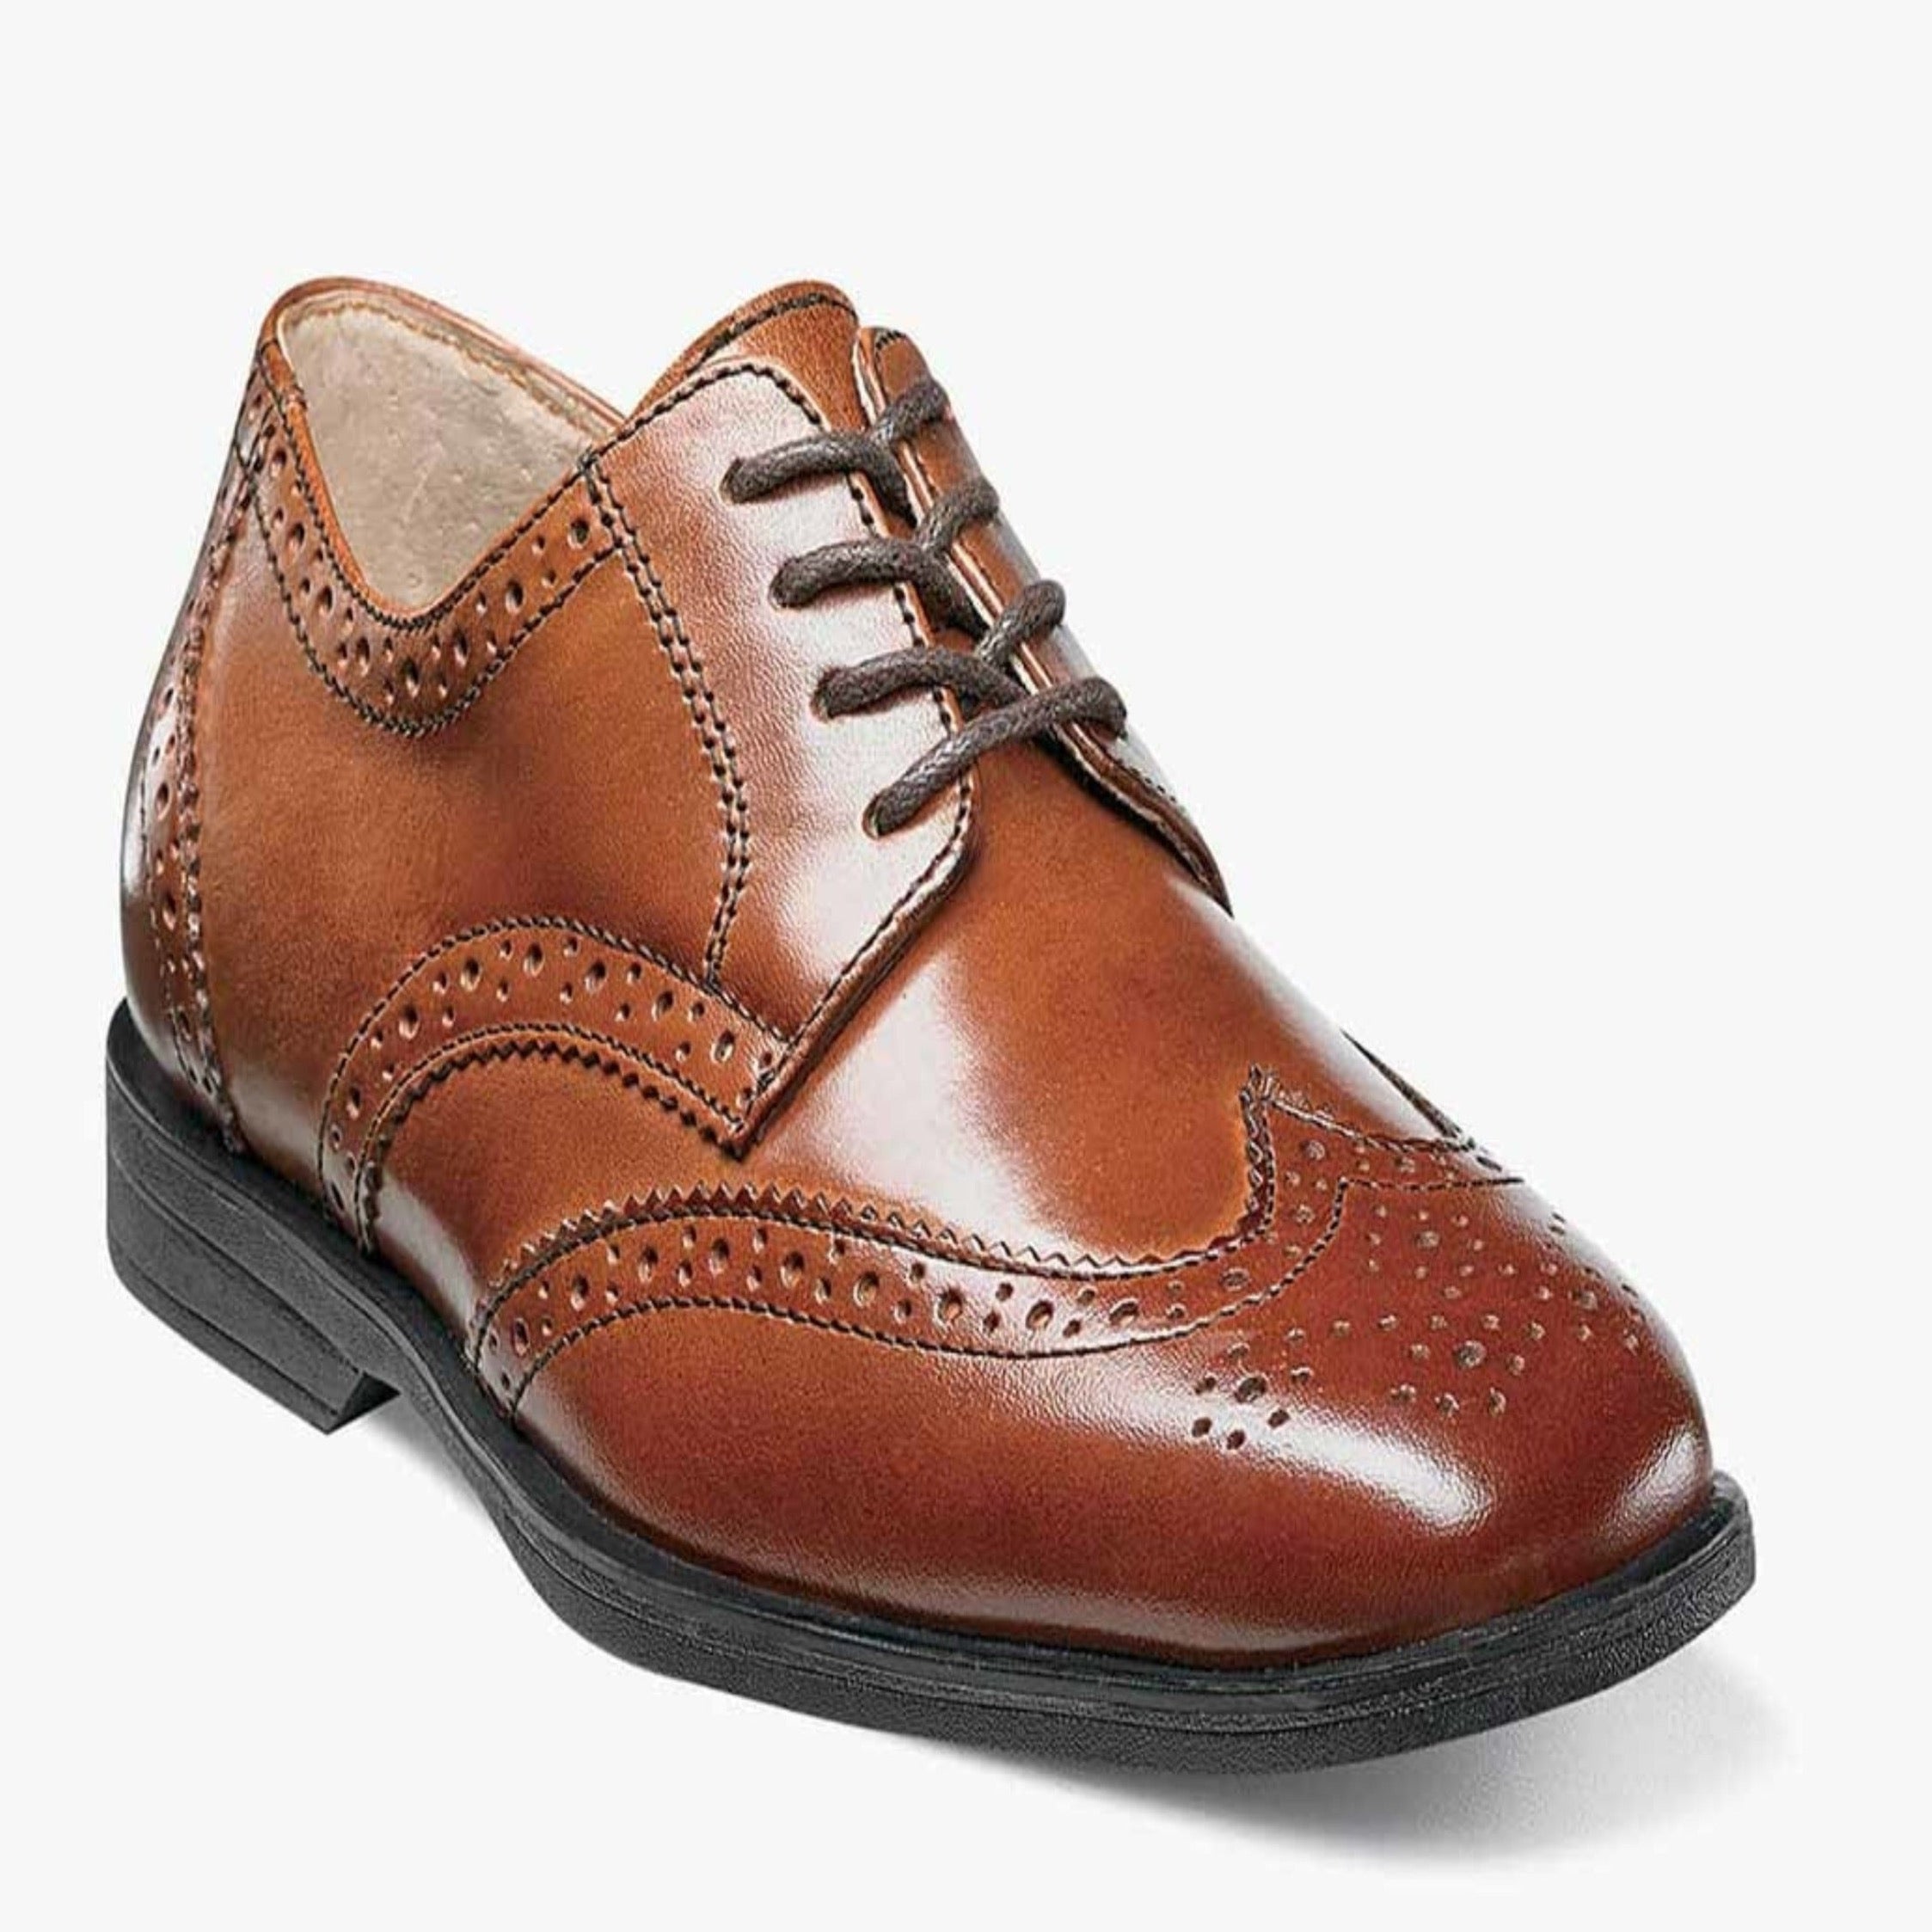 Reveal Cognac Wingtip Shoe